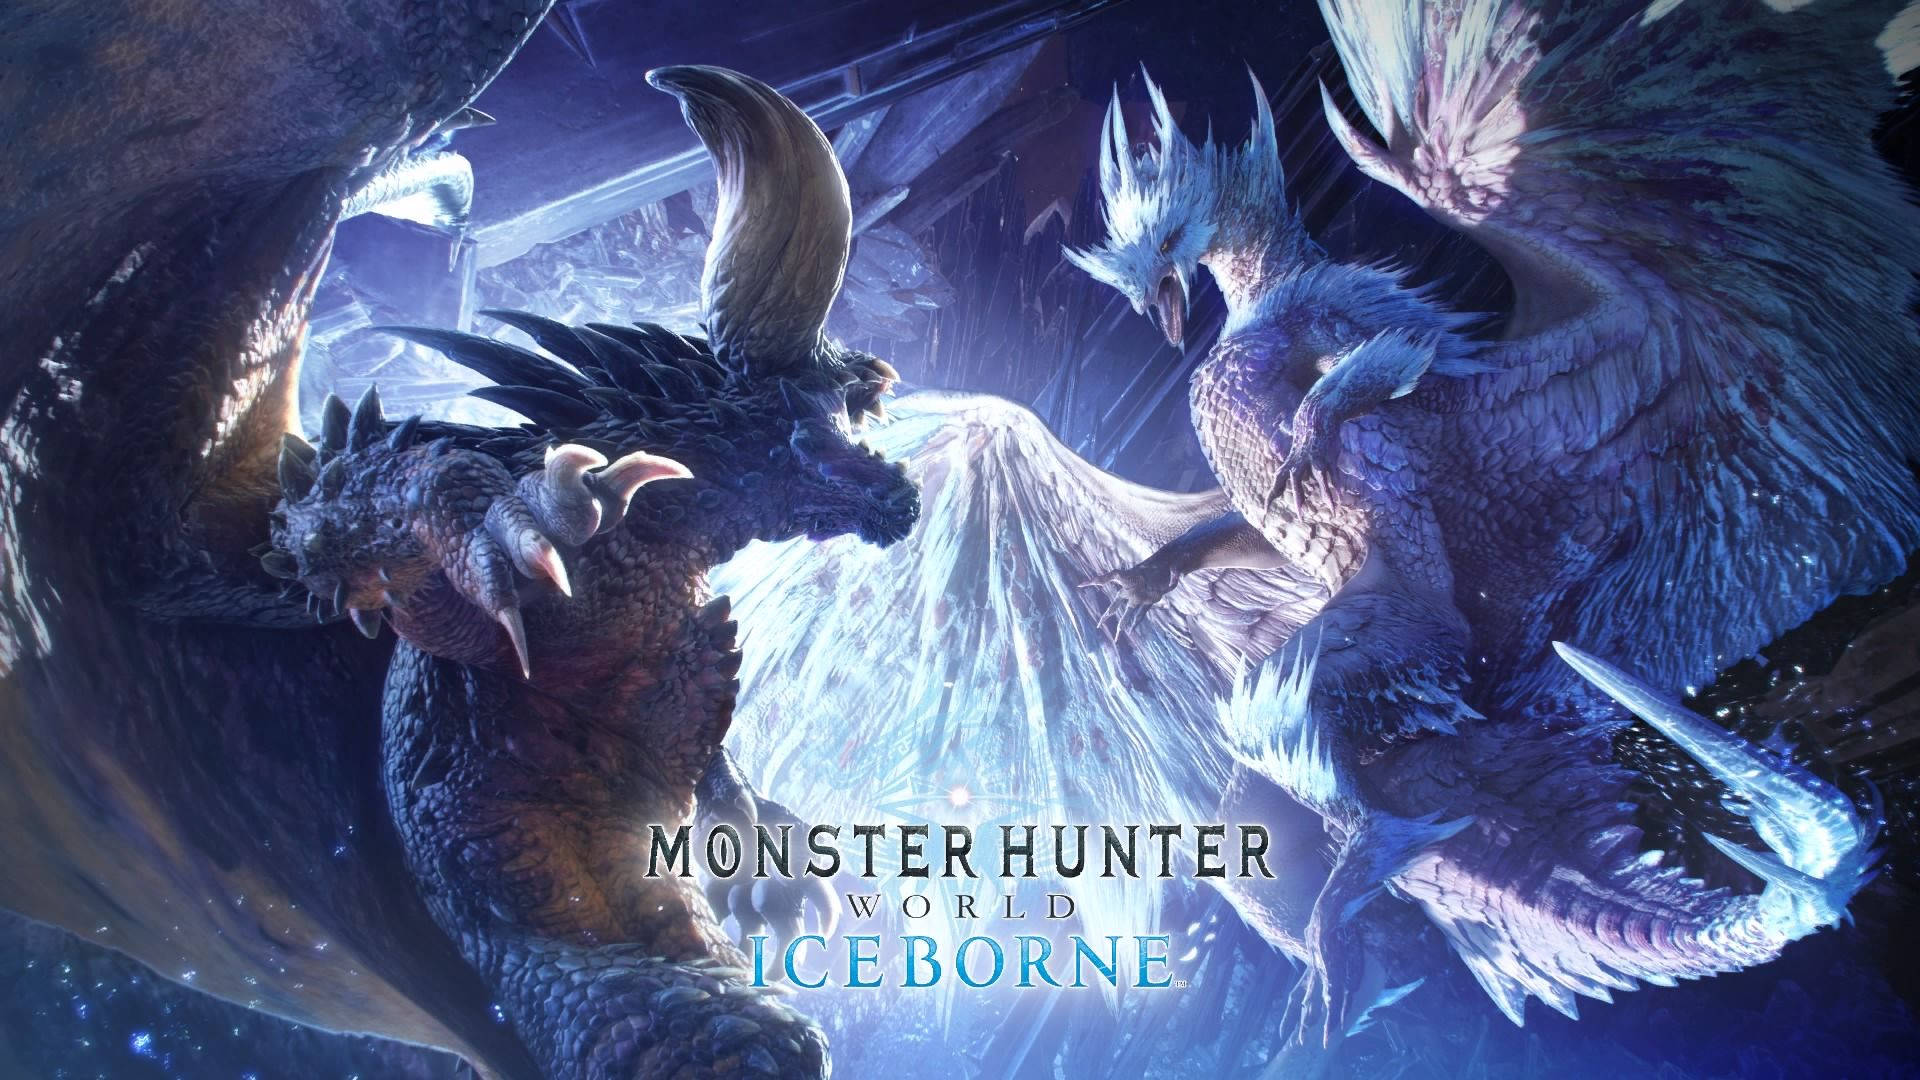 Monster Hunter World Iceborne Nergigante Velkhana Background